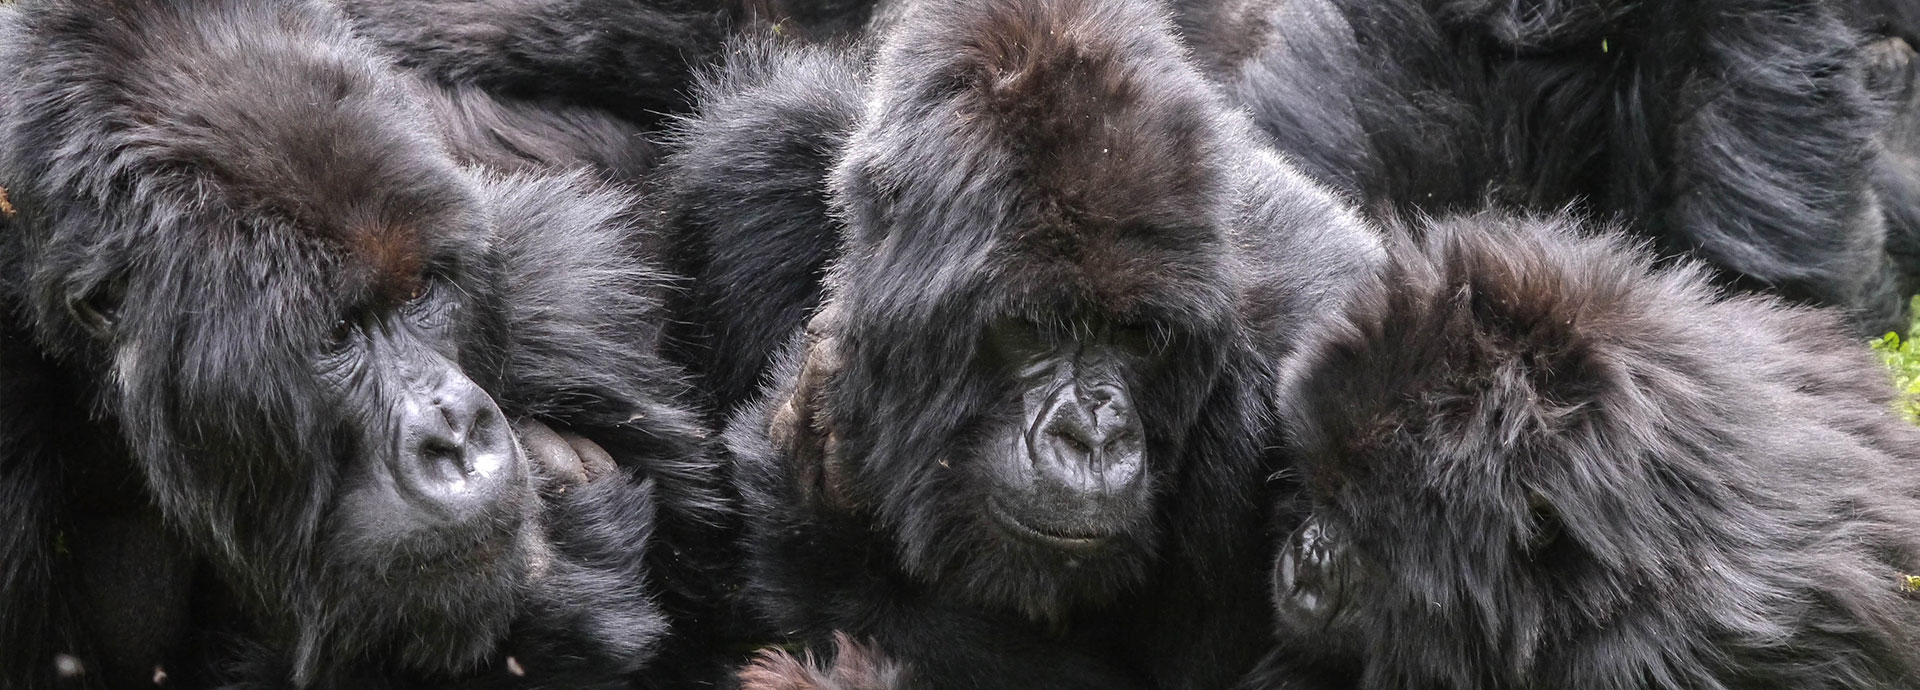 Trek in search of mountain gorillas at Sabyinyo Silverback Lodge